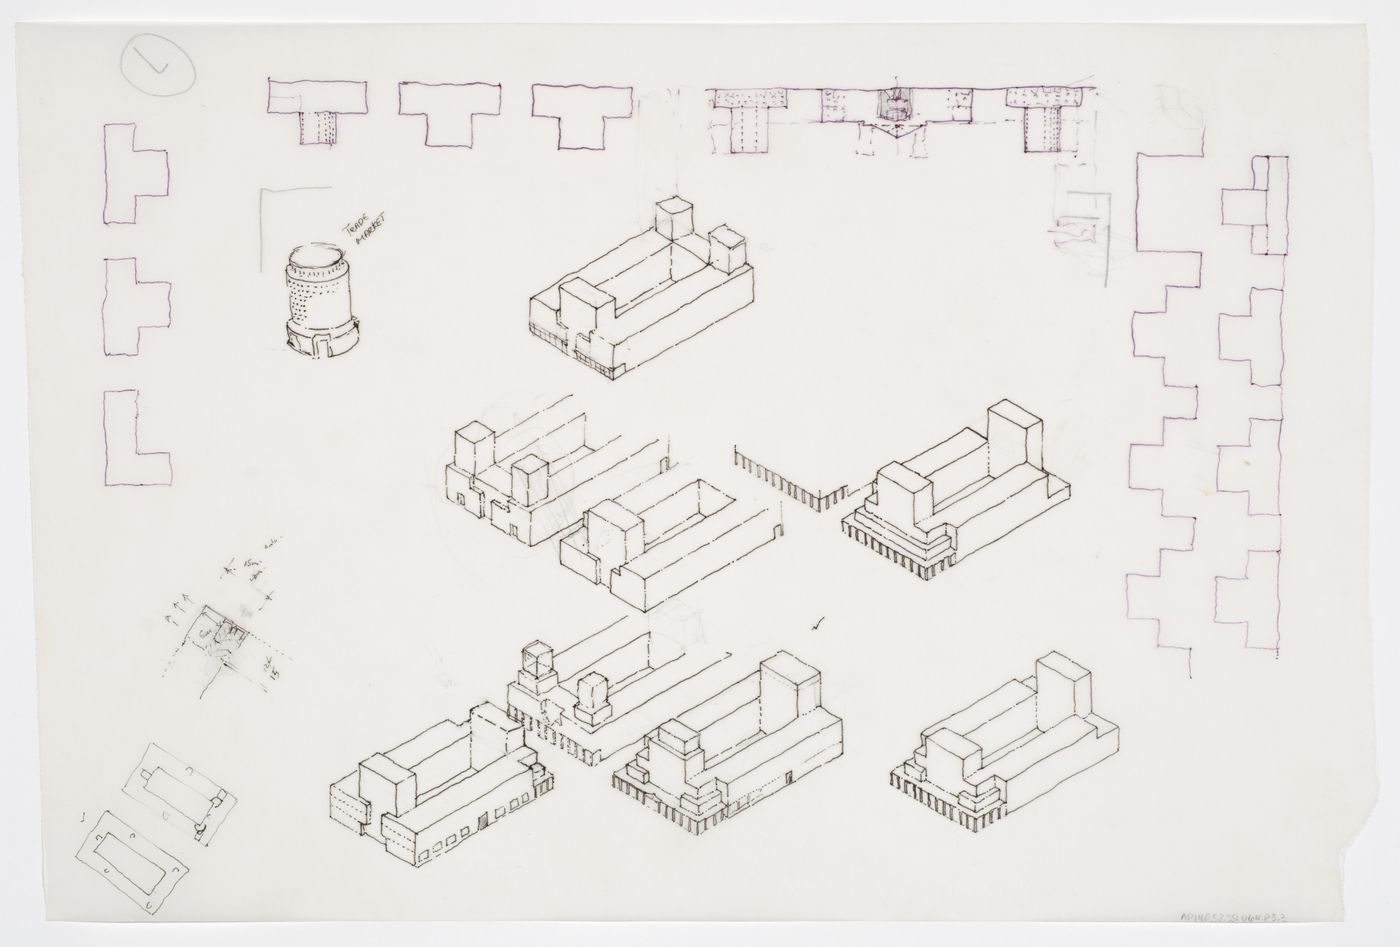 New Town Centre, Caselecchio di Reno, Italy: conceptual sketches